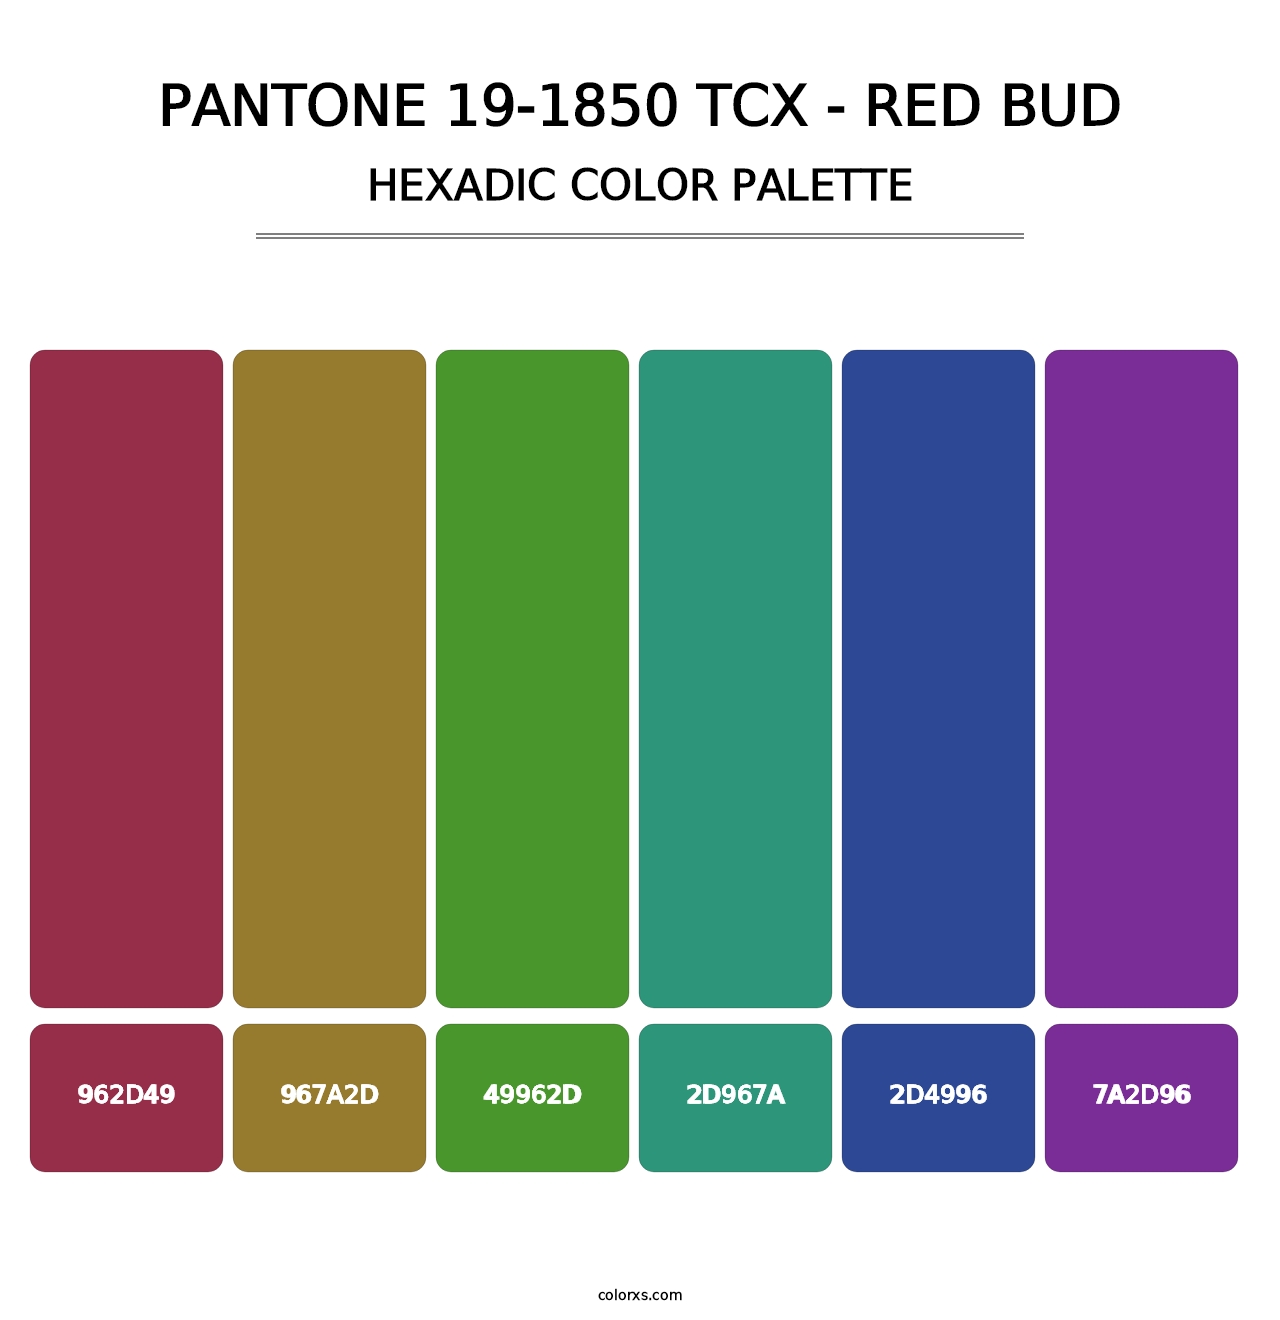 PANTONE 19-1850 TCX - Red Bud - Hexadic Color Palette